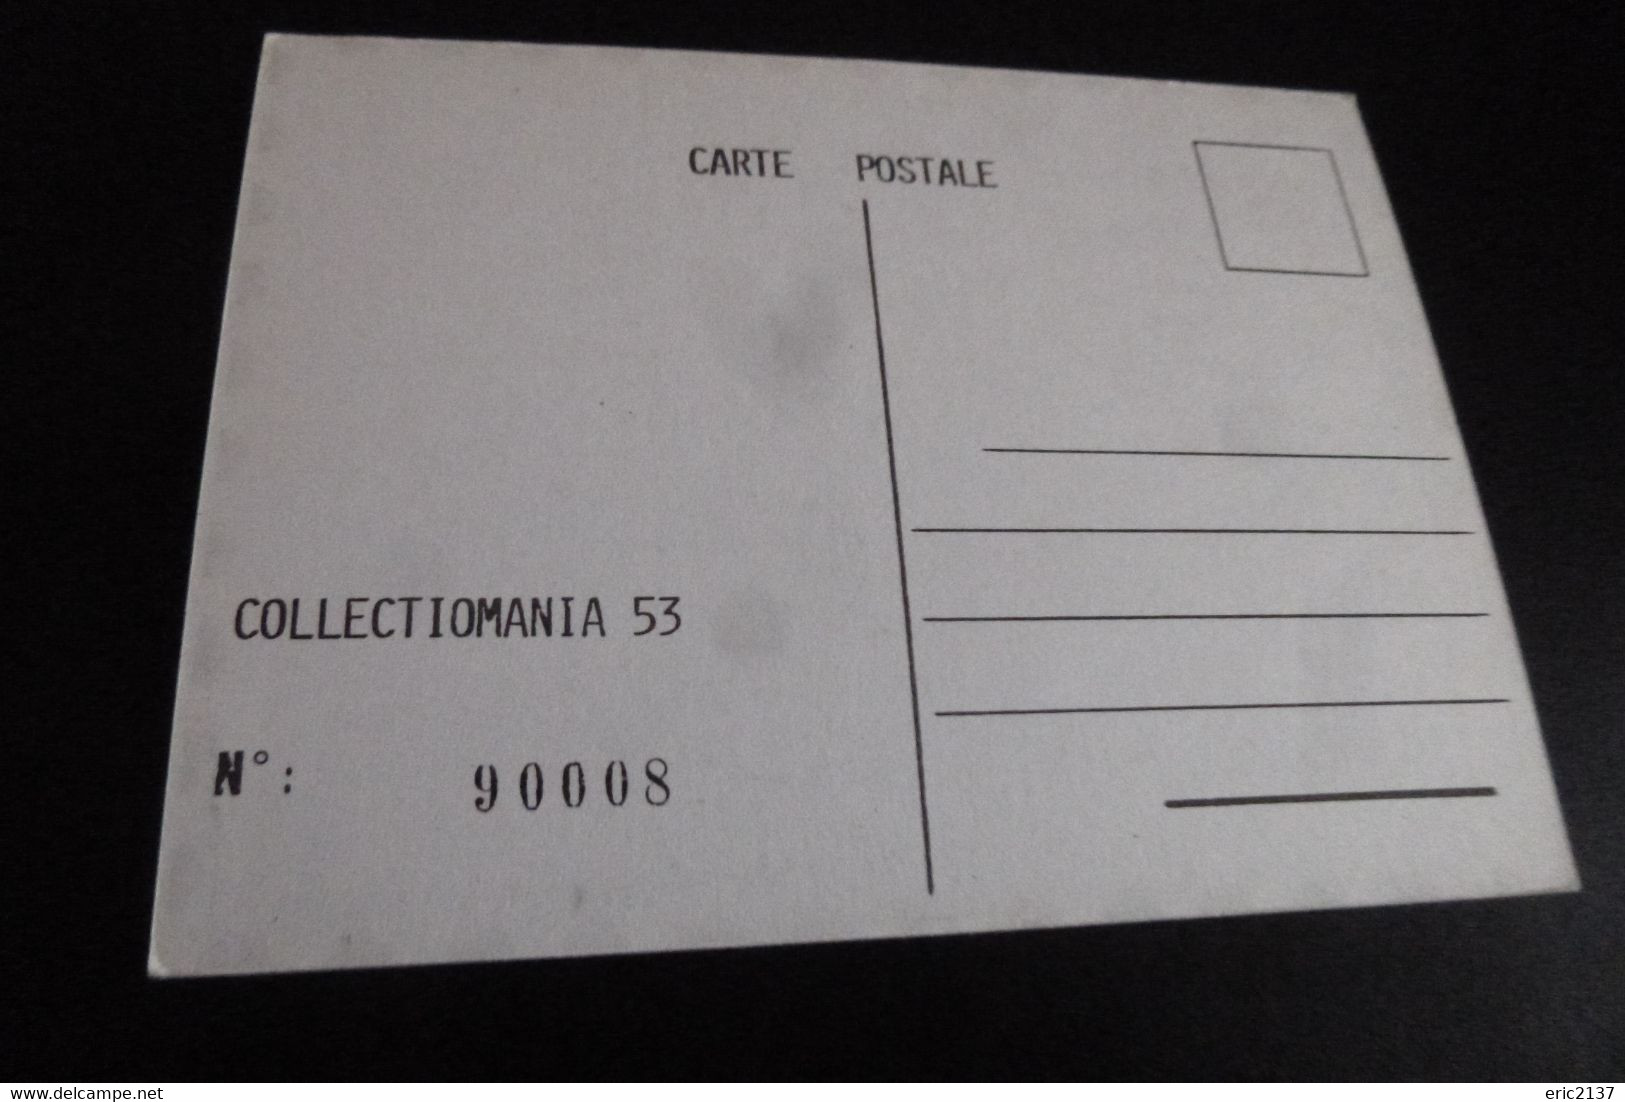 3E FOIRE AUX COLLECTIONS ..CHATEAU GONTIER 1987.. - Bourses & Salons De Collections